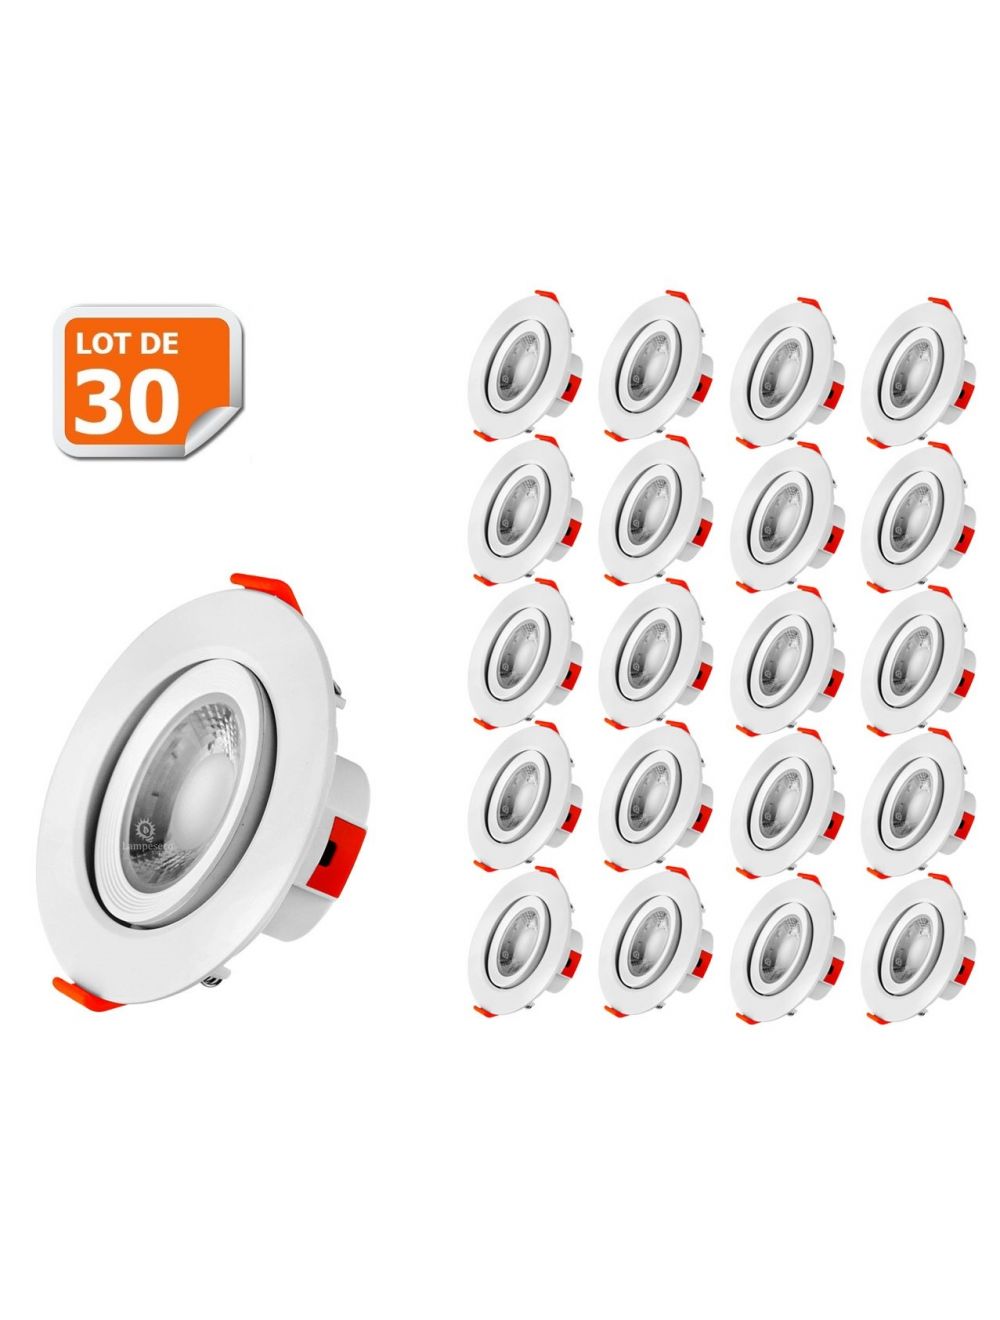 Éclairez votre maison avec style grâce au Lot de 30 Spot LED encastrable  pour plafond 5W Blanc Neutre